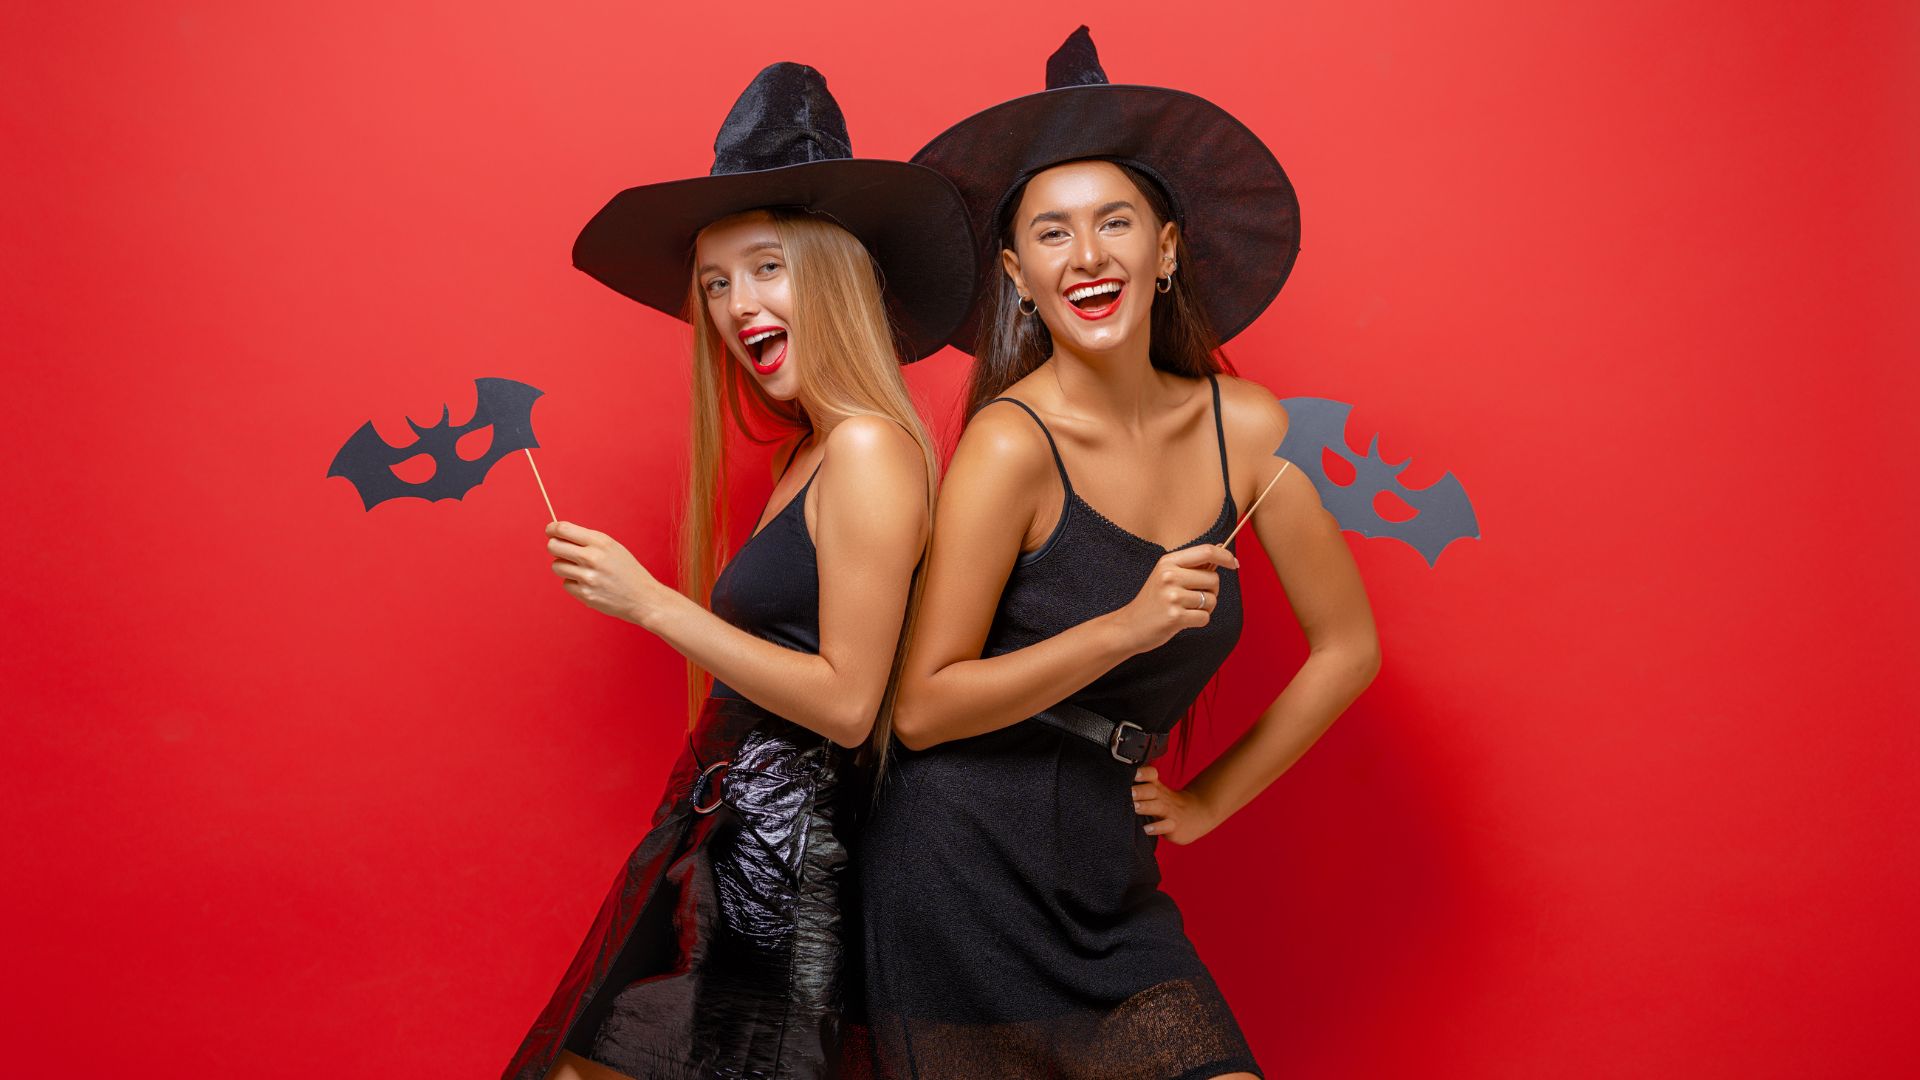 Imagem de fundo vermelho com duas mulheres (uma loura e outra morena) fantasiadas de bruxas. Elsas usam vestidos e chapéus pretos e seguram uma máscara de morcego.